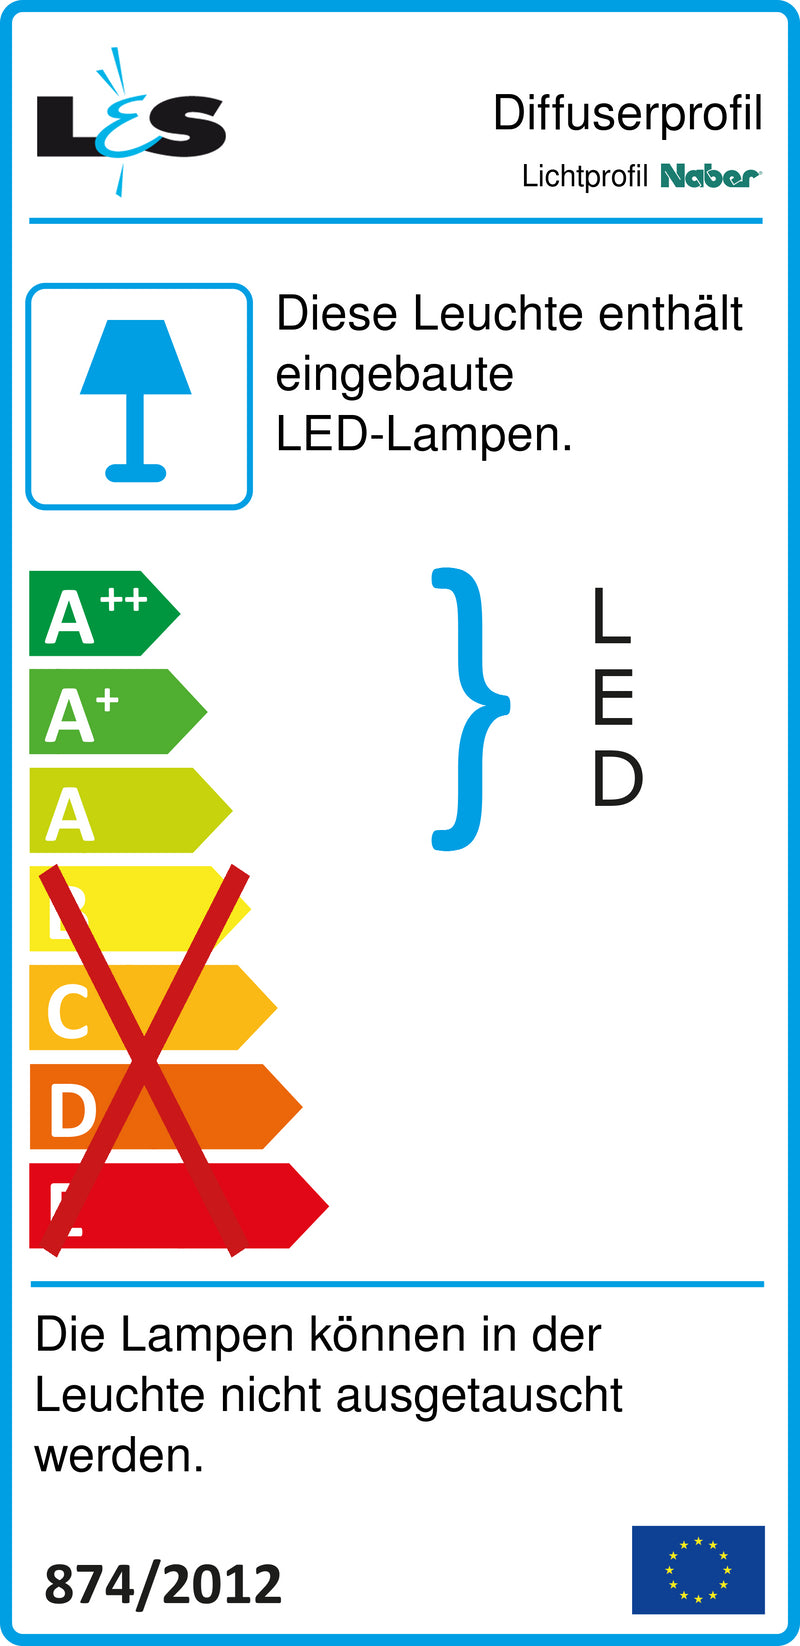 E-Label zu Zeichnung zu Lichtprofil Farbwechsel LED als Variante Einzelleuchte, alufarbig von Naber GmbH in der Kategorie Lichttechnik in Österreich auf conceptshop.at